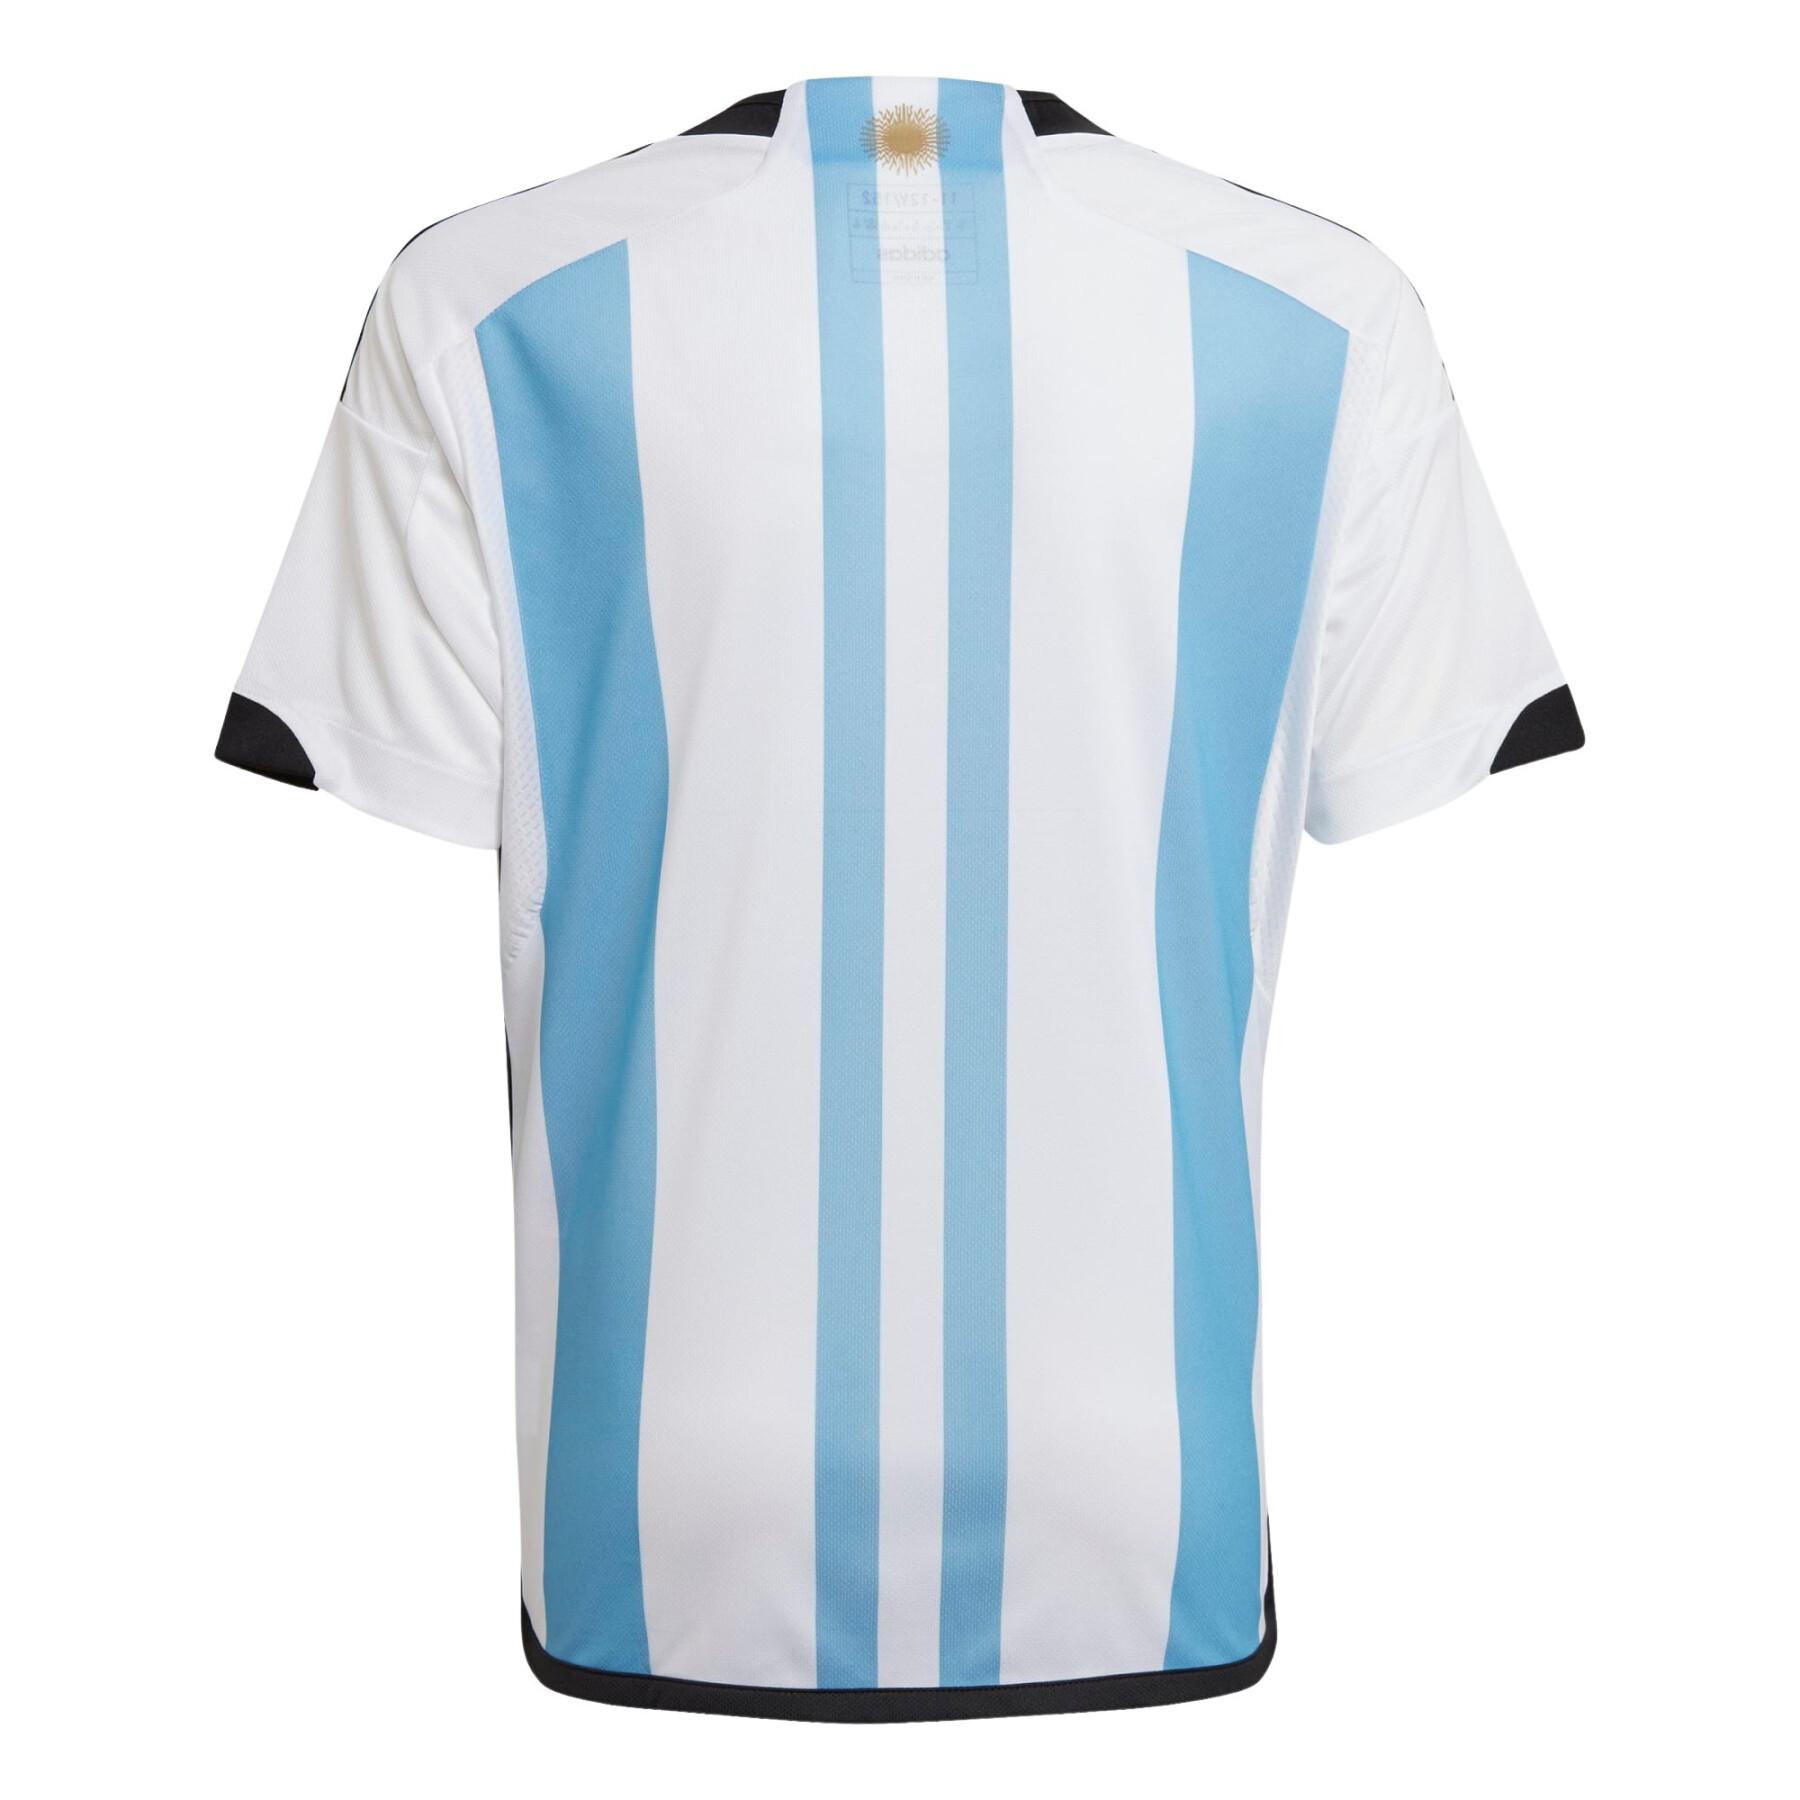 Children's home jersey World Cup 2022 Argentine